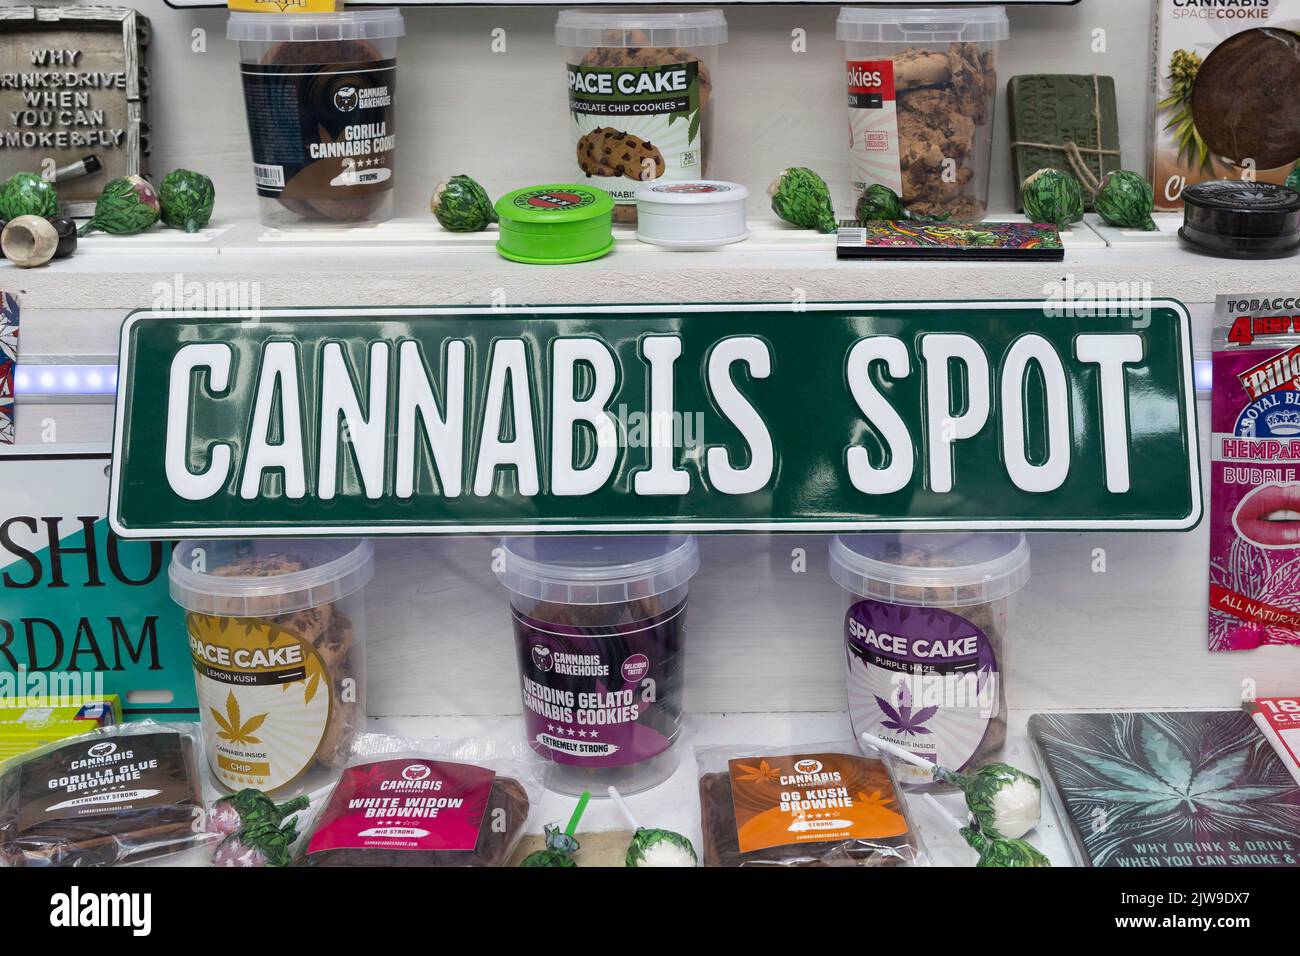 Une collection de cannabis paraphhernalia dans la fenêtre d'un magasin à Amsterdam, Hollande. Banque D'Images